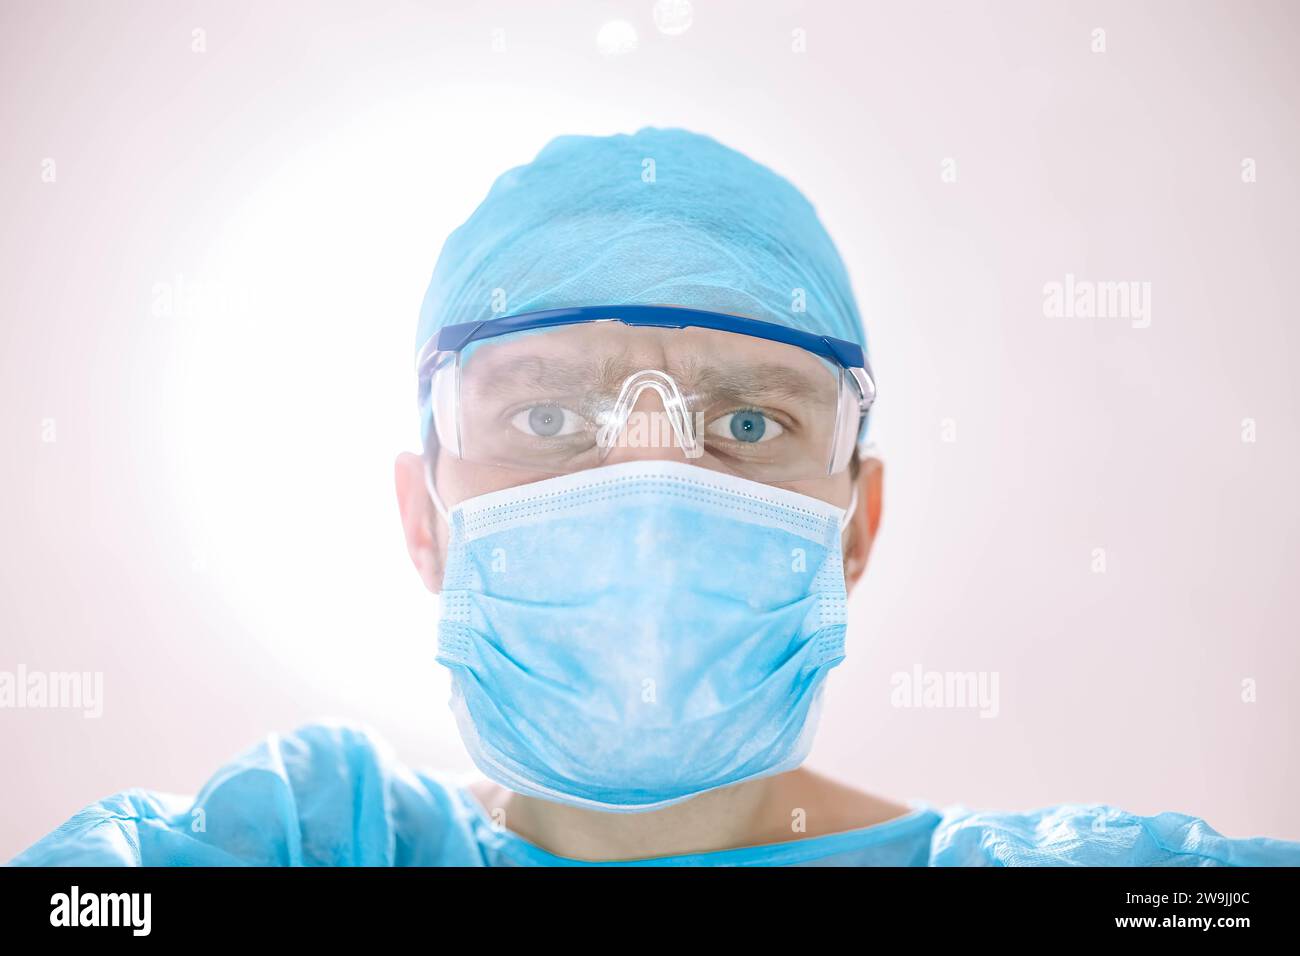 Medico chirurgo maschio in sala operatoria che guarda il paziente alla telecamera Foto Stock